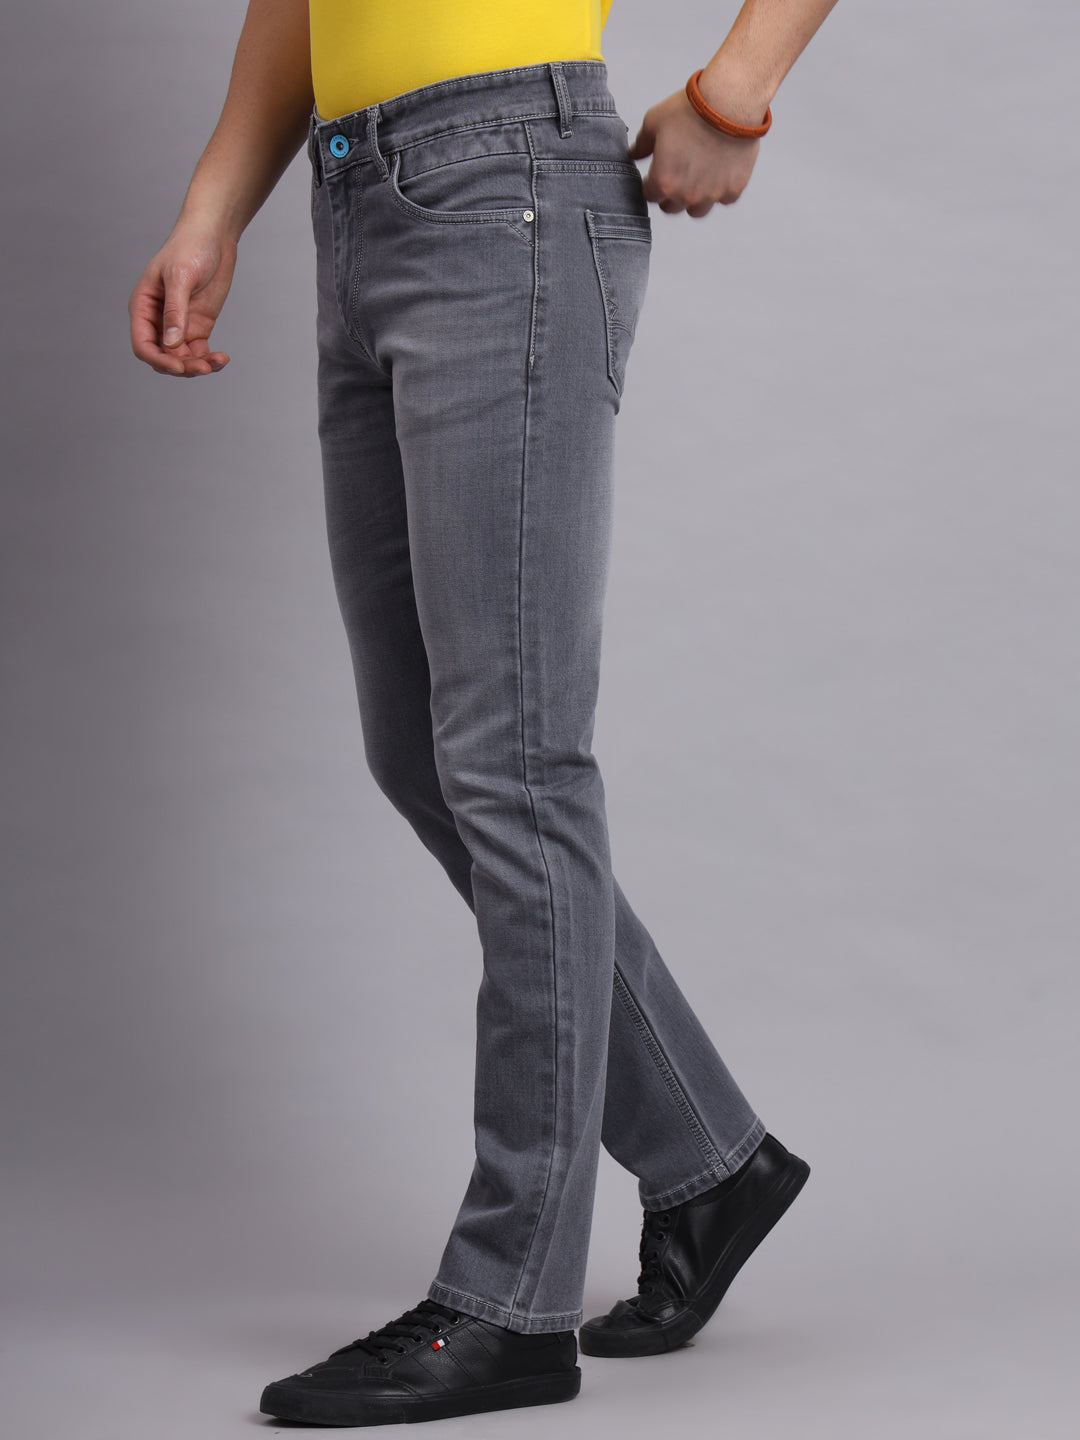 Amswan  Men's Grey Jeans